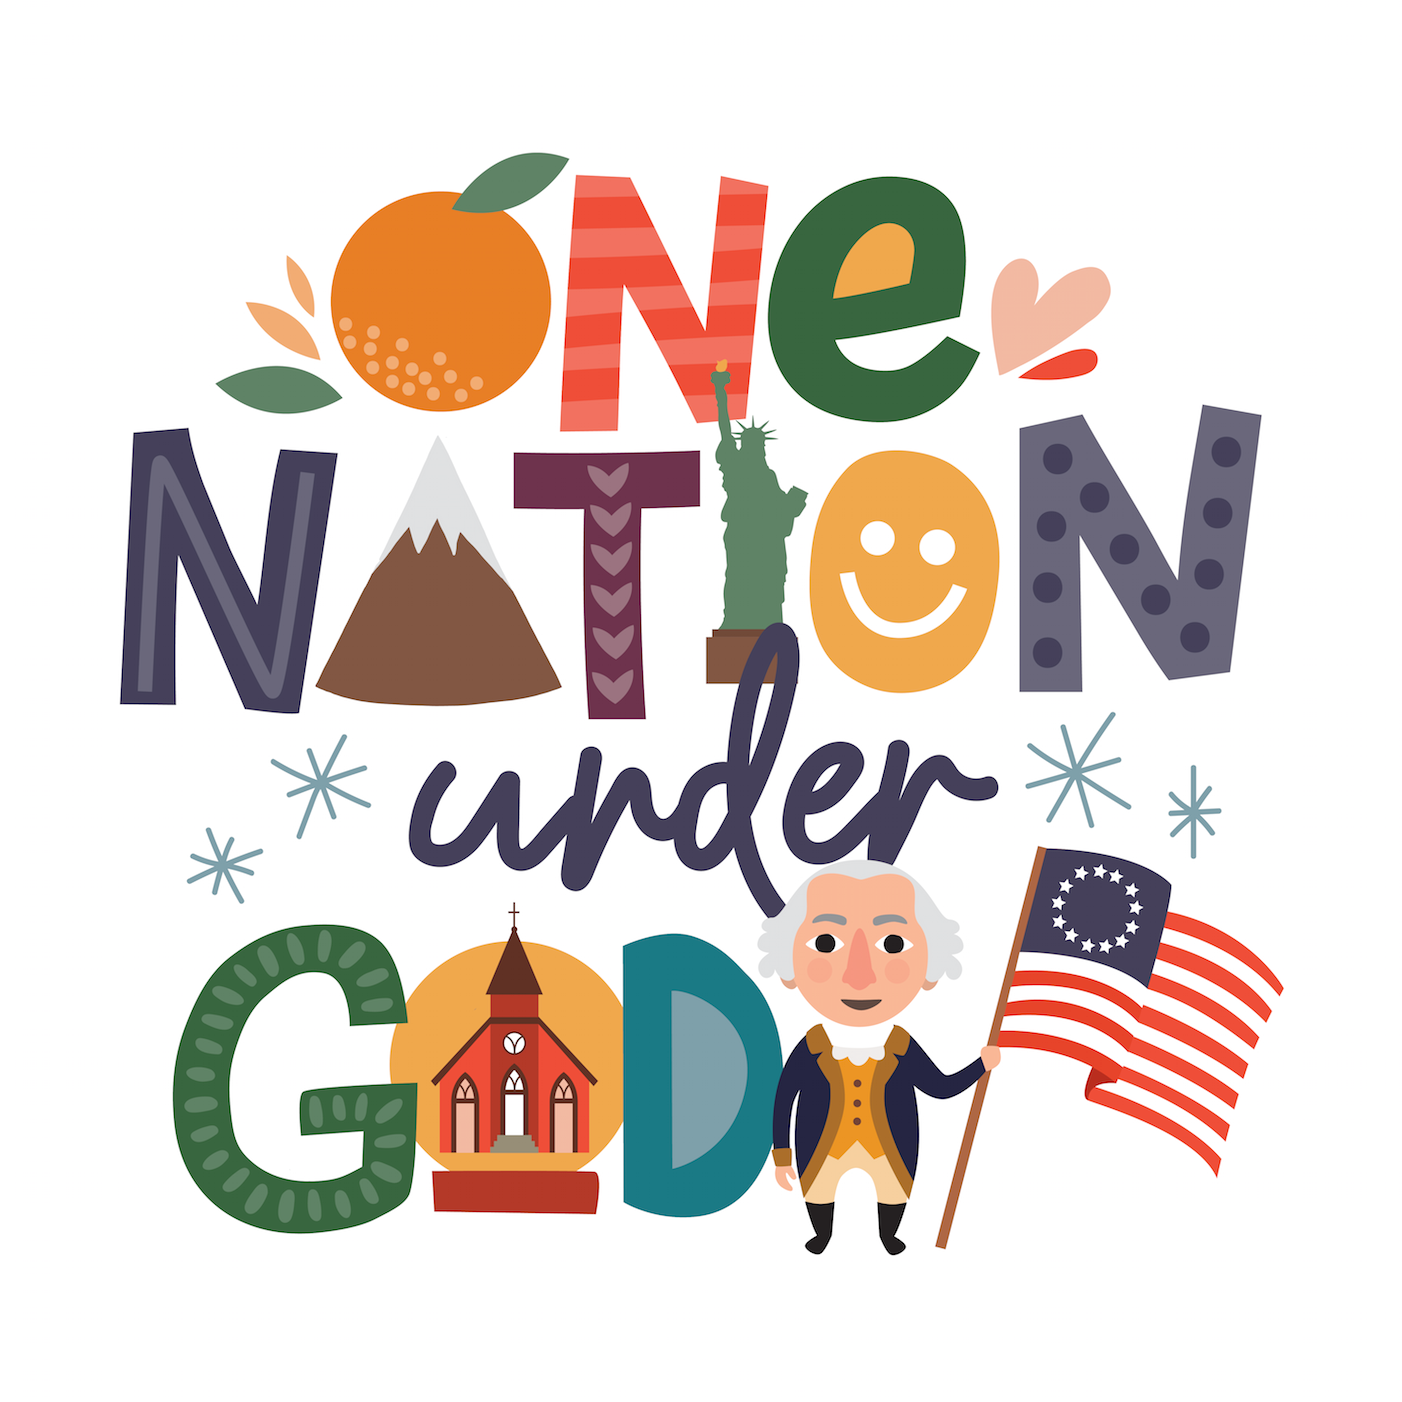 One Nation Under God Printable